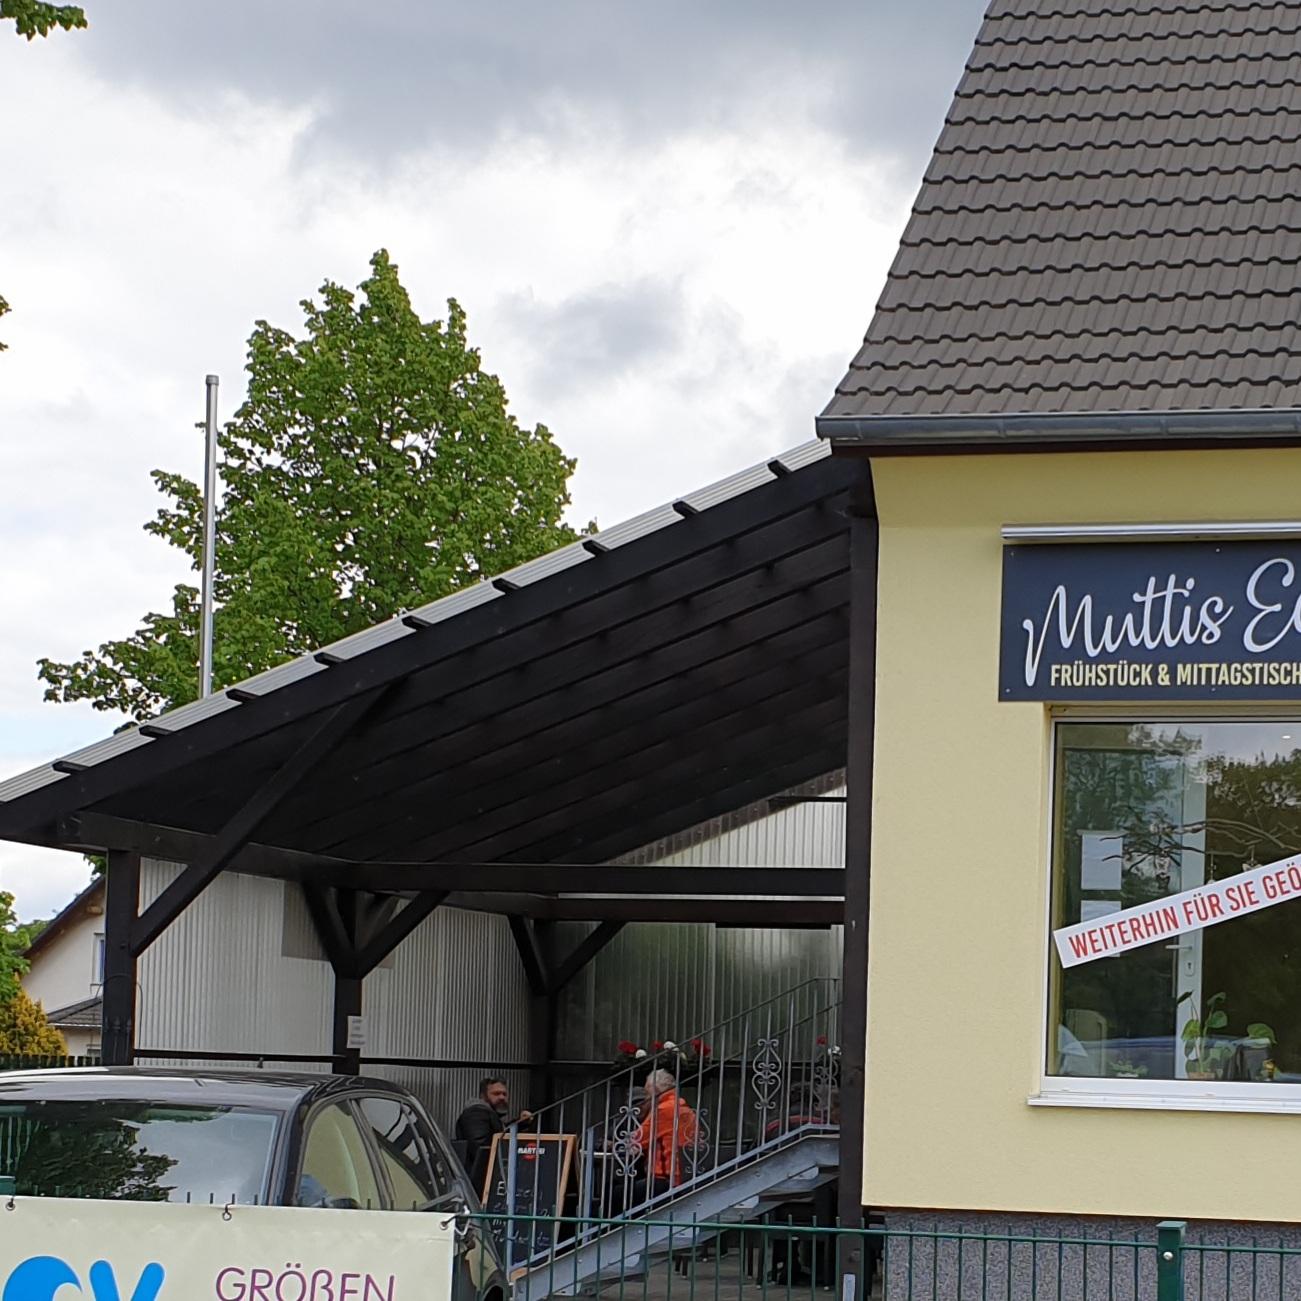 Restaurant "Muttis Eck" in Blankenfelde-Mahlow